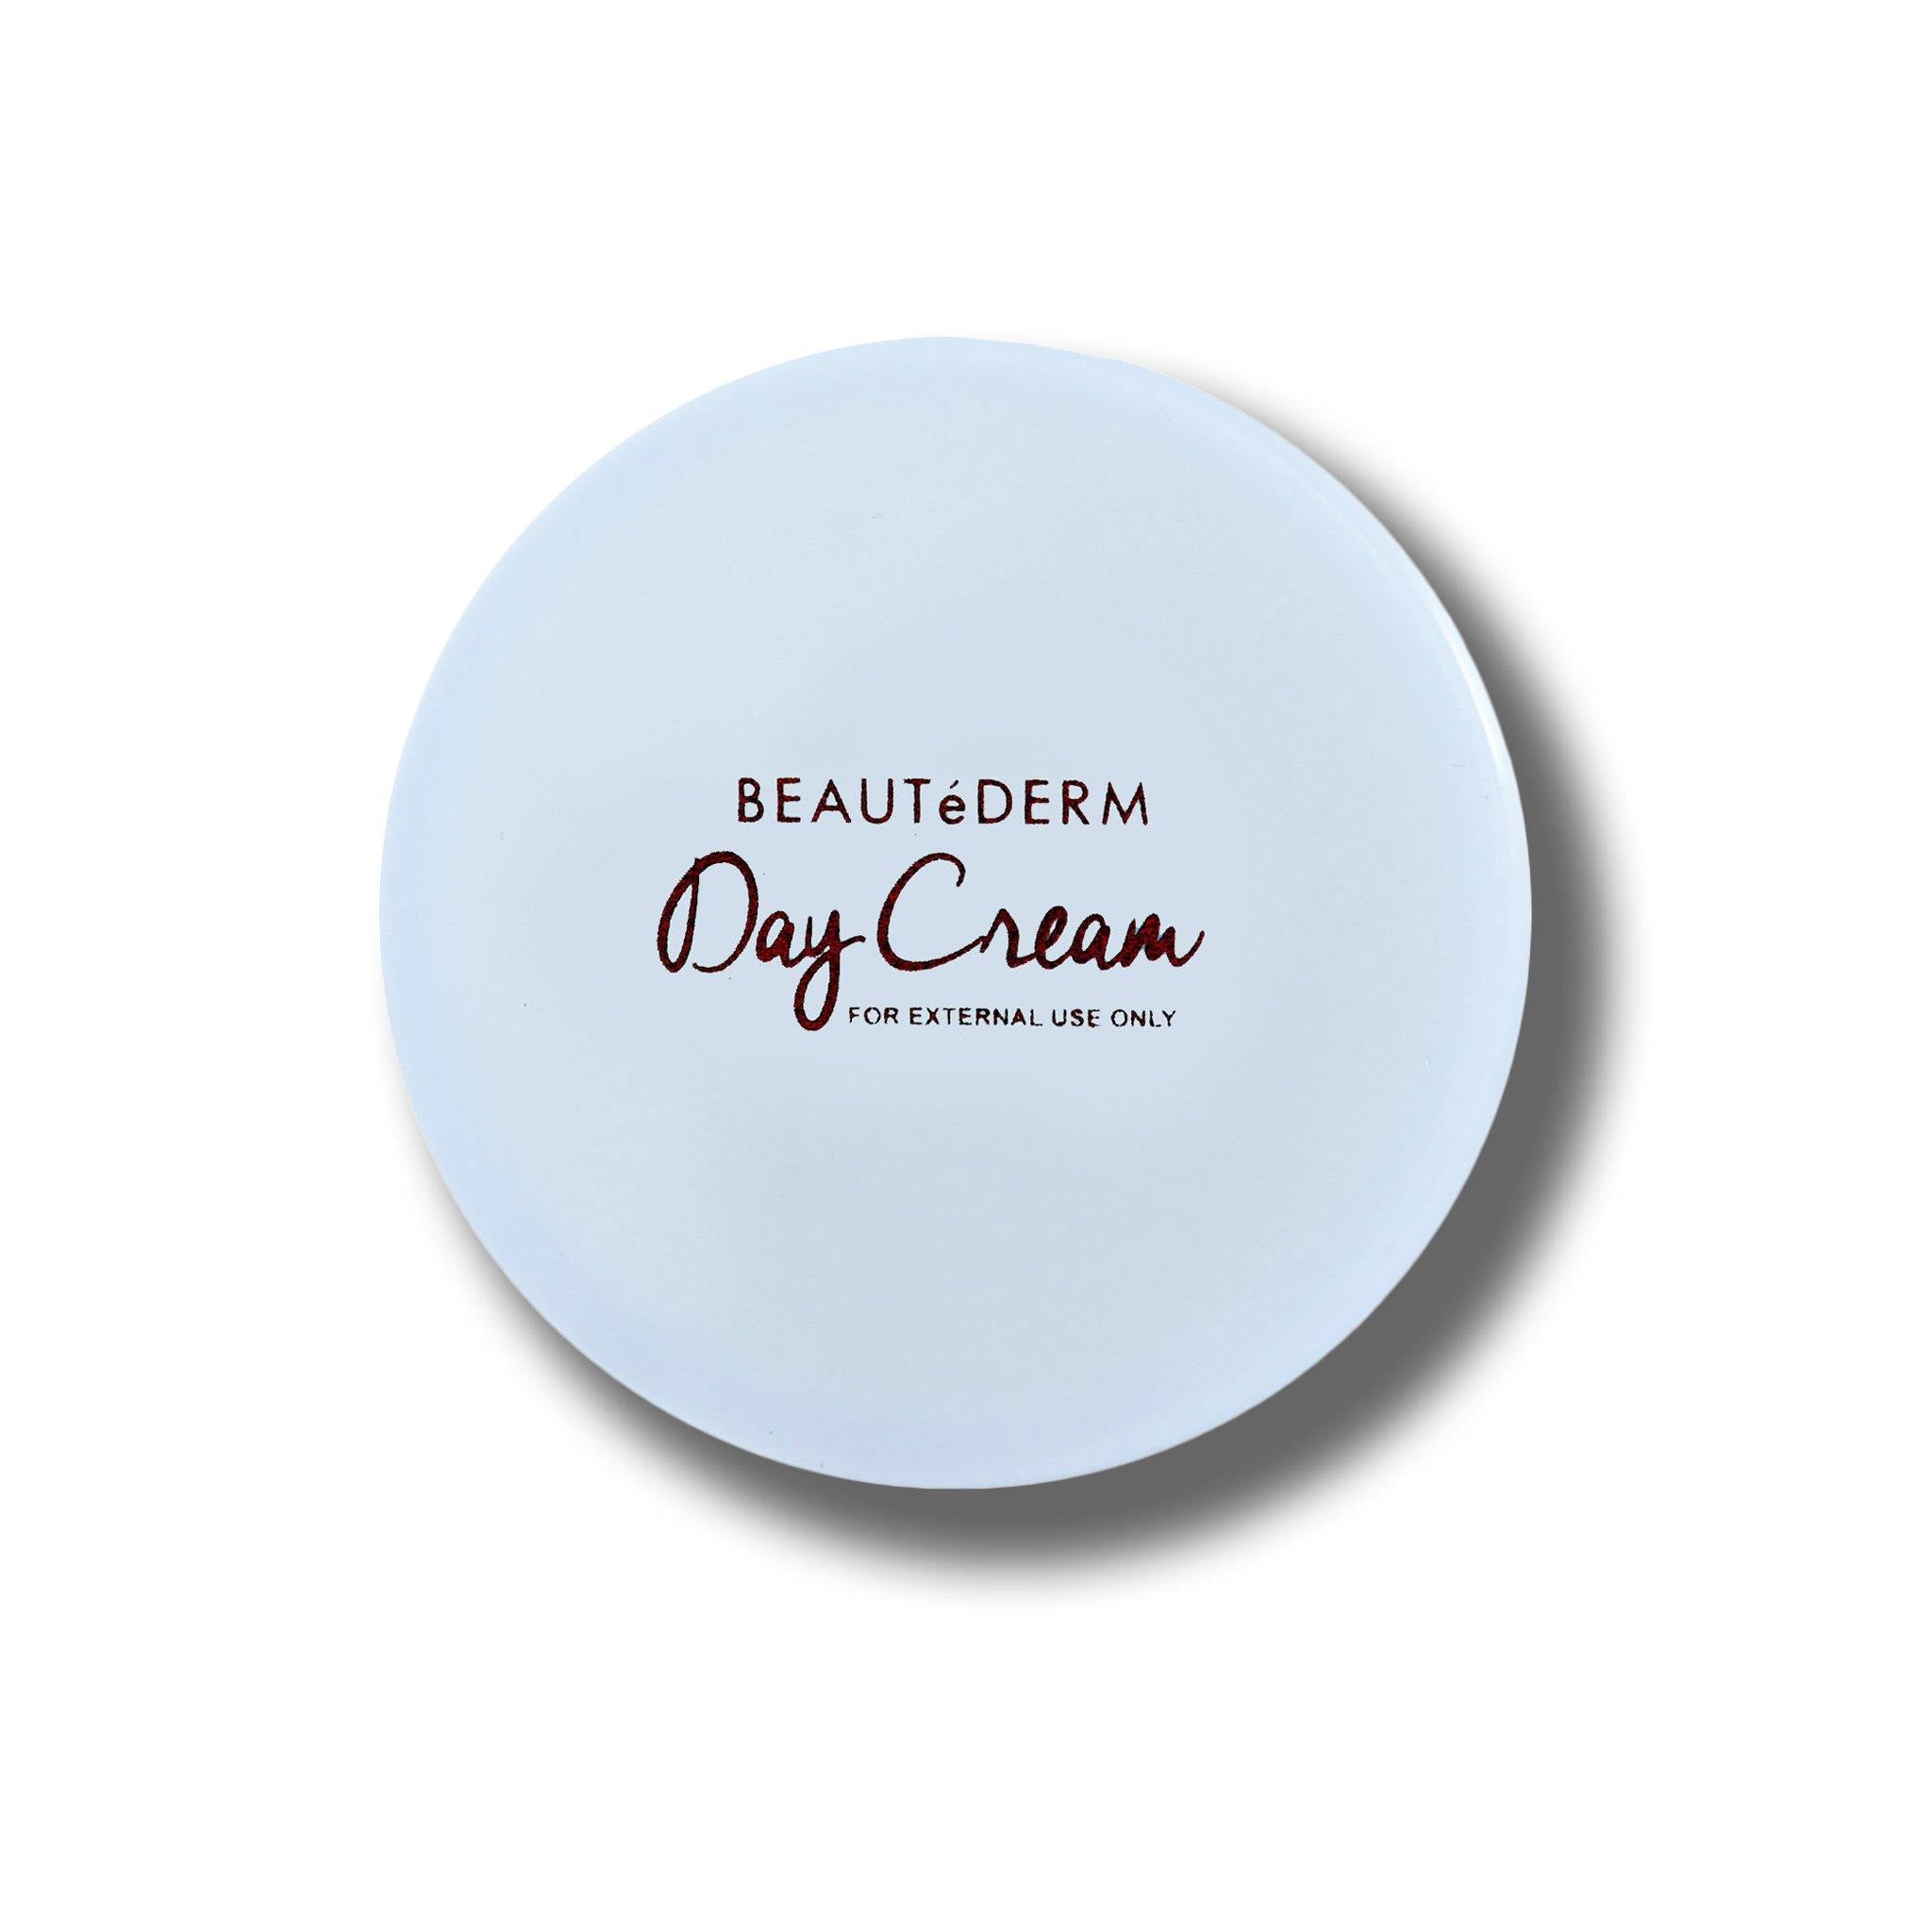 Day Cream, 50g, by Beautederm